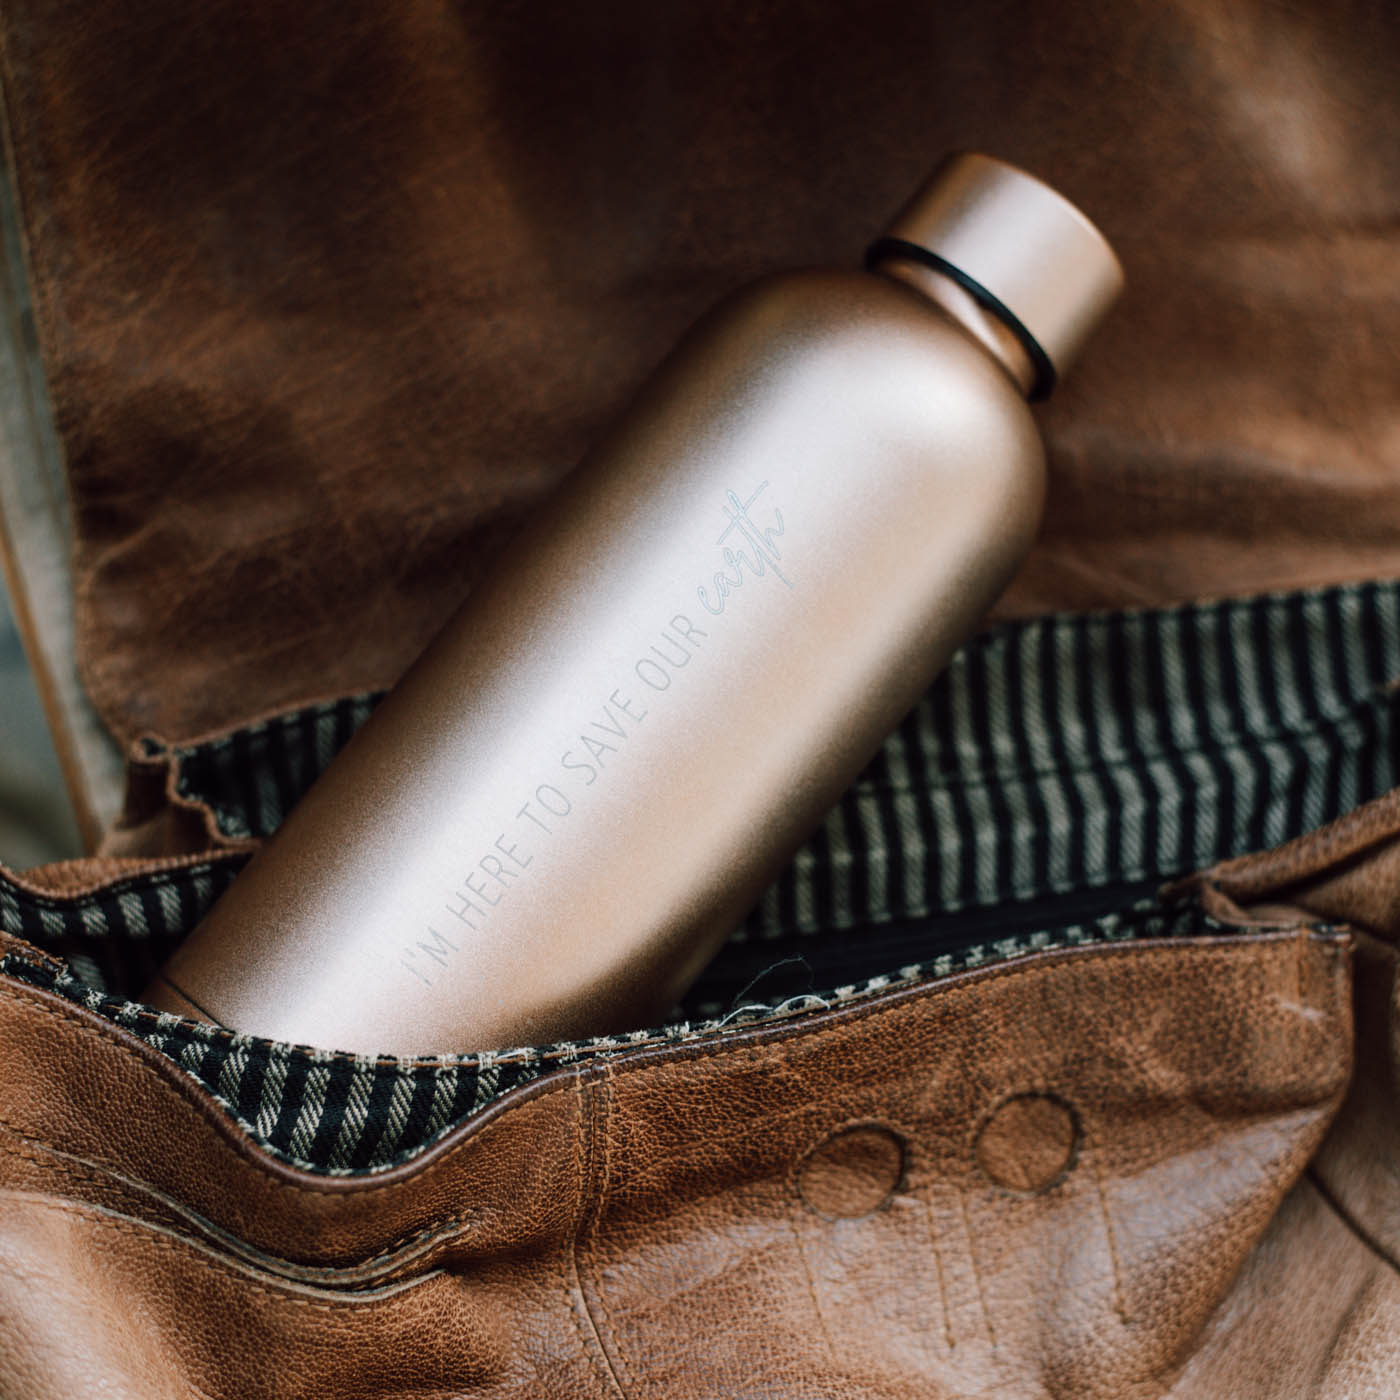 Stay hydrated! Thermosflasche aus Edelstahl für deinen nachhaltigen Lifestyle. 500 ml Volumen, extrem stabil, hält bis zu 8 Stunden warm/kalt, plastikfrei verpackt. Müll vermeiden & mit dem nachhaltigen Lifestyle Spaß haben.